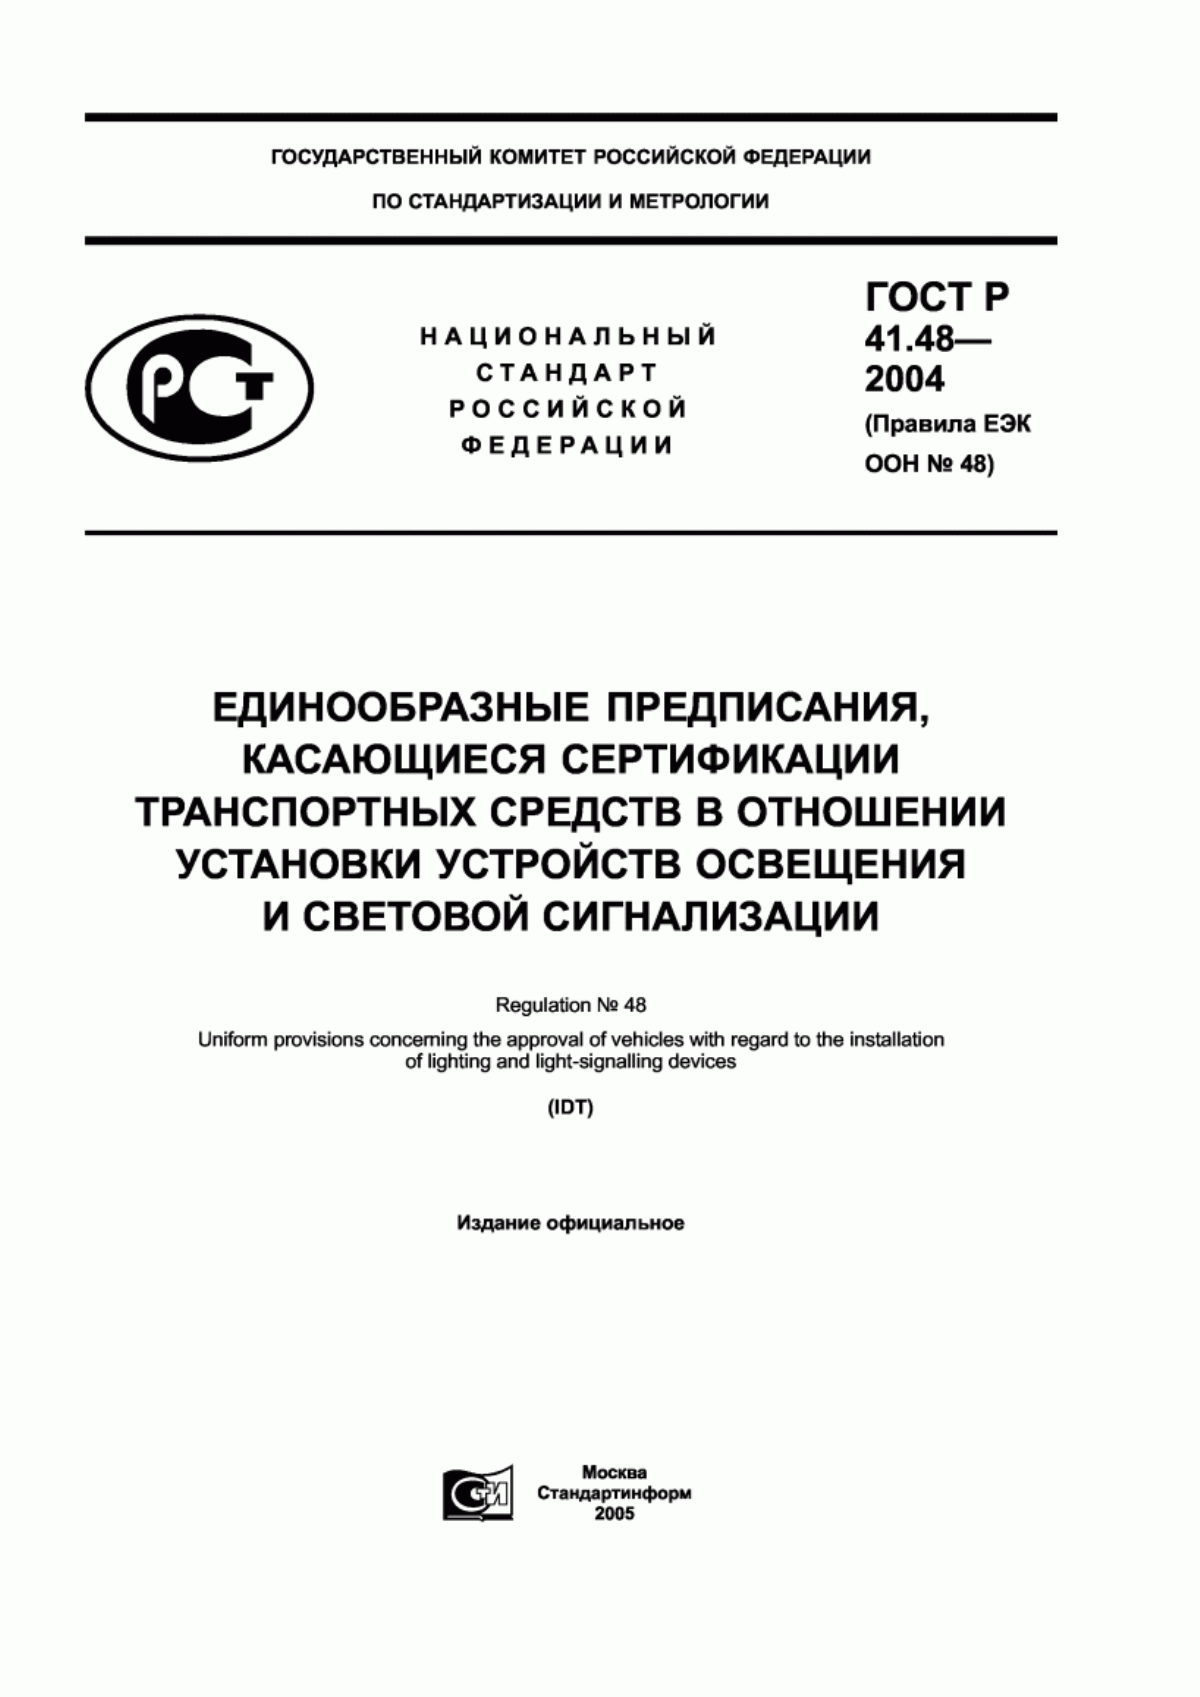 ГОСТ Р 41.48-2004 Единообразные предписания, касающиеся сертификации транспортных средств в отношении установки устройств освещения и световой сигнализации